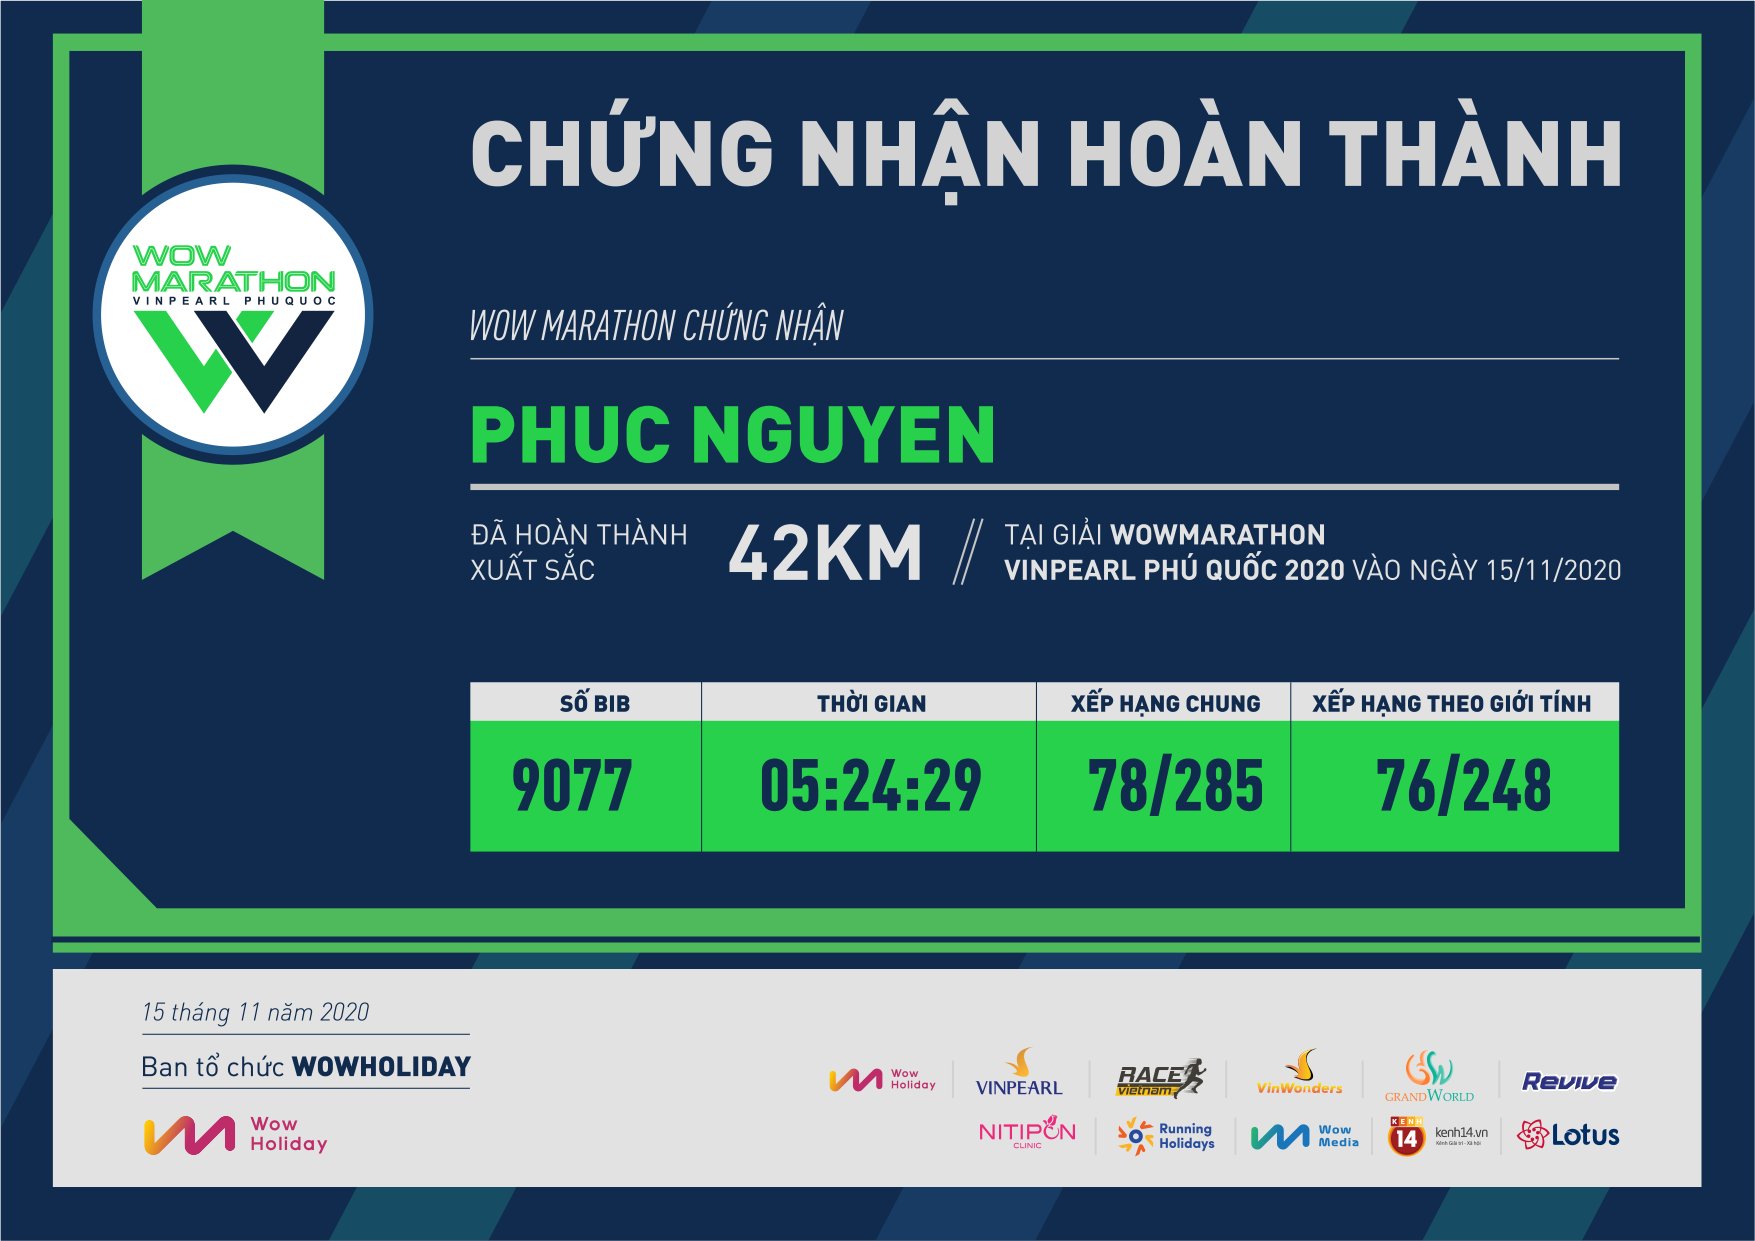 9077 - Phuc Nguyen